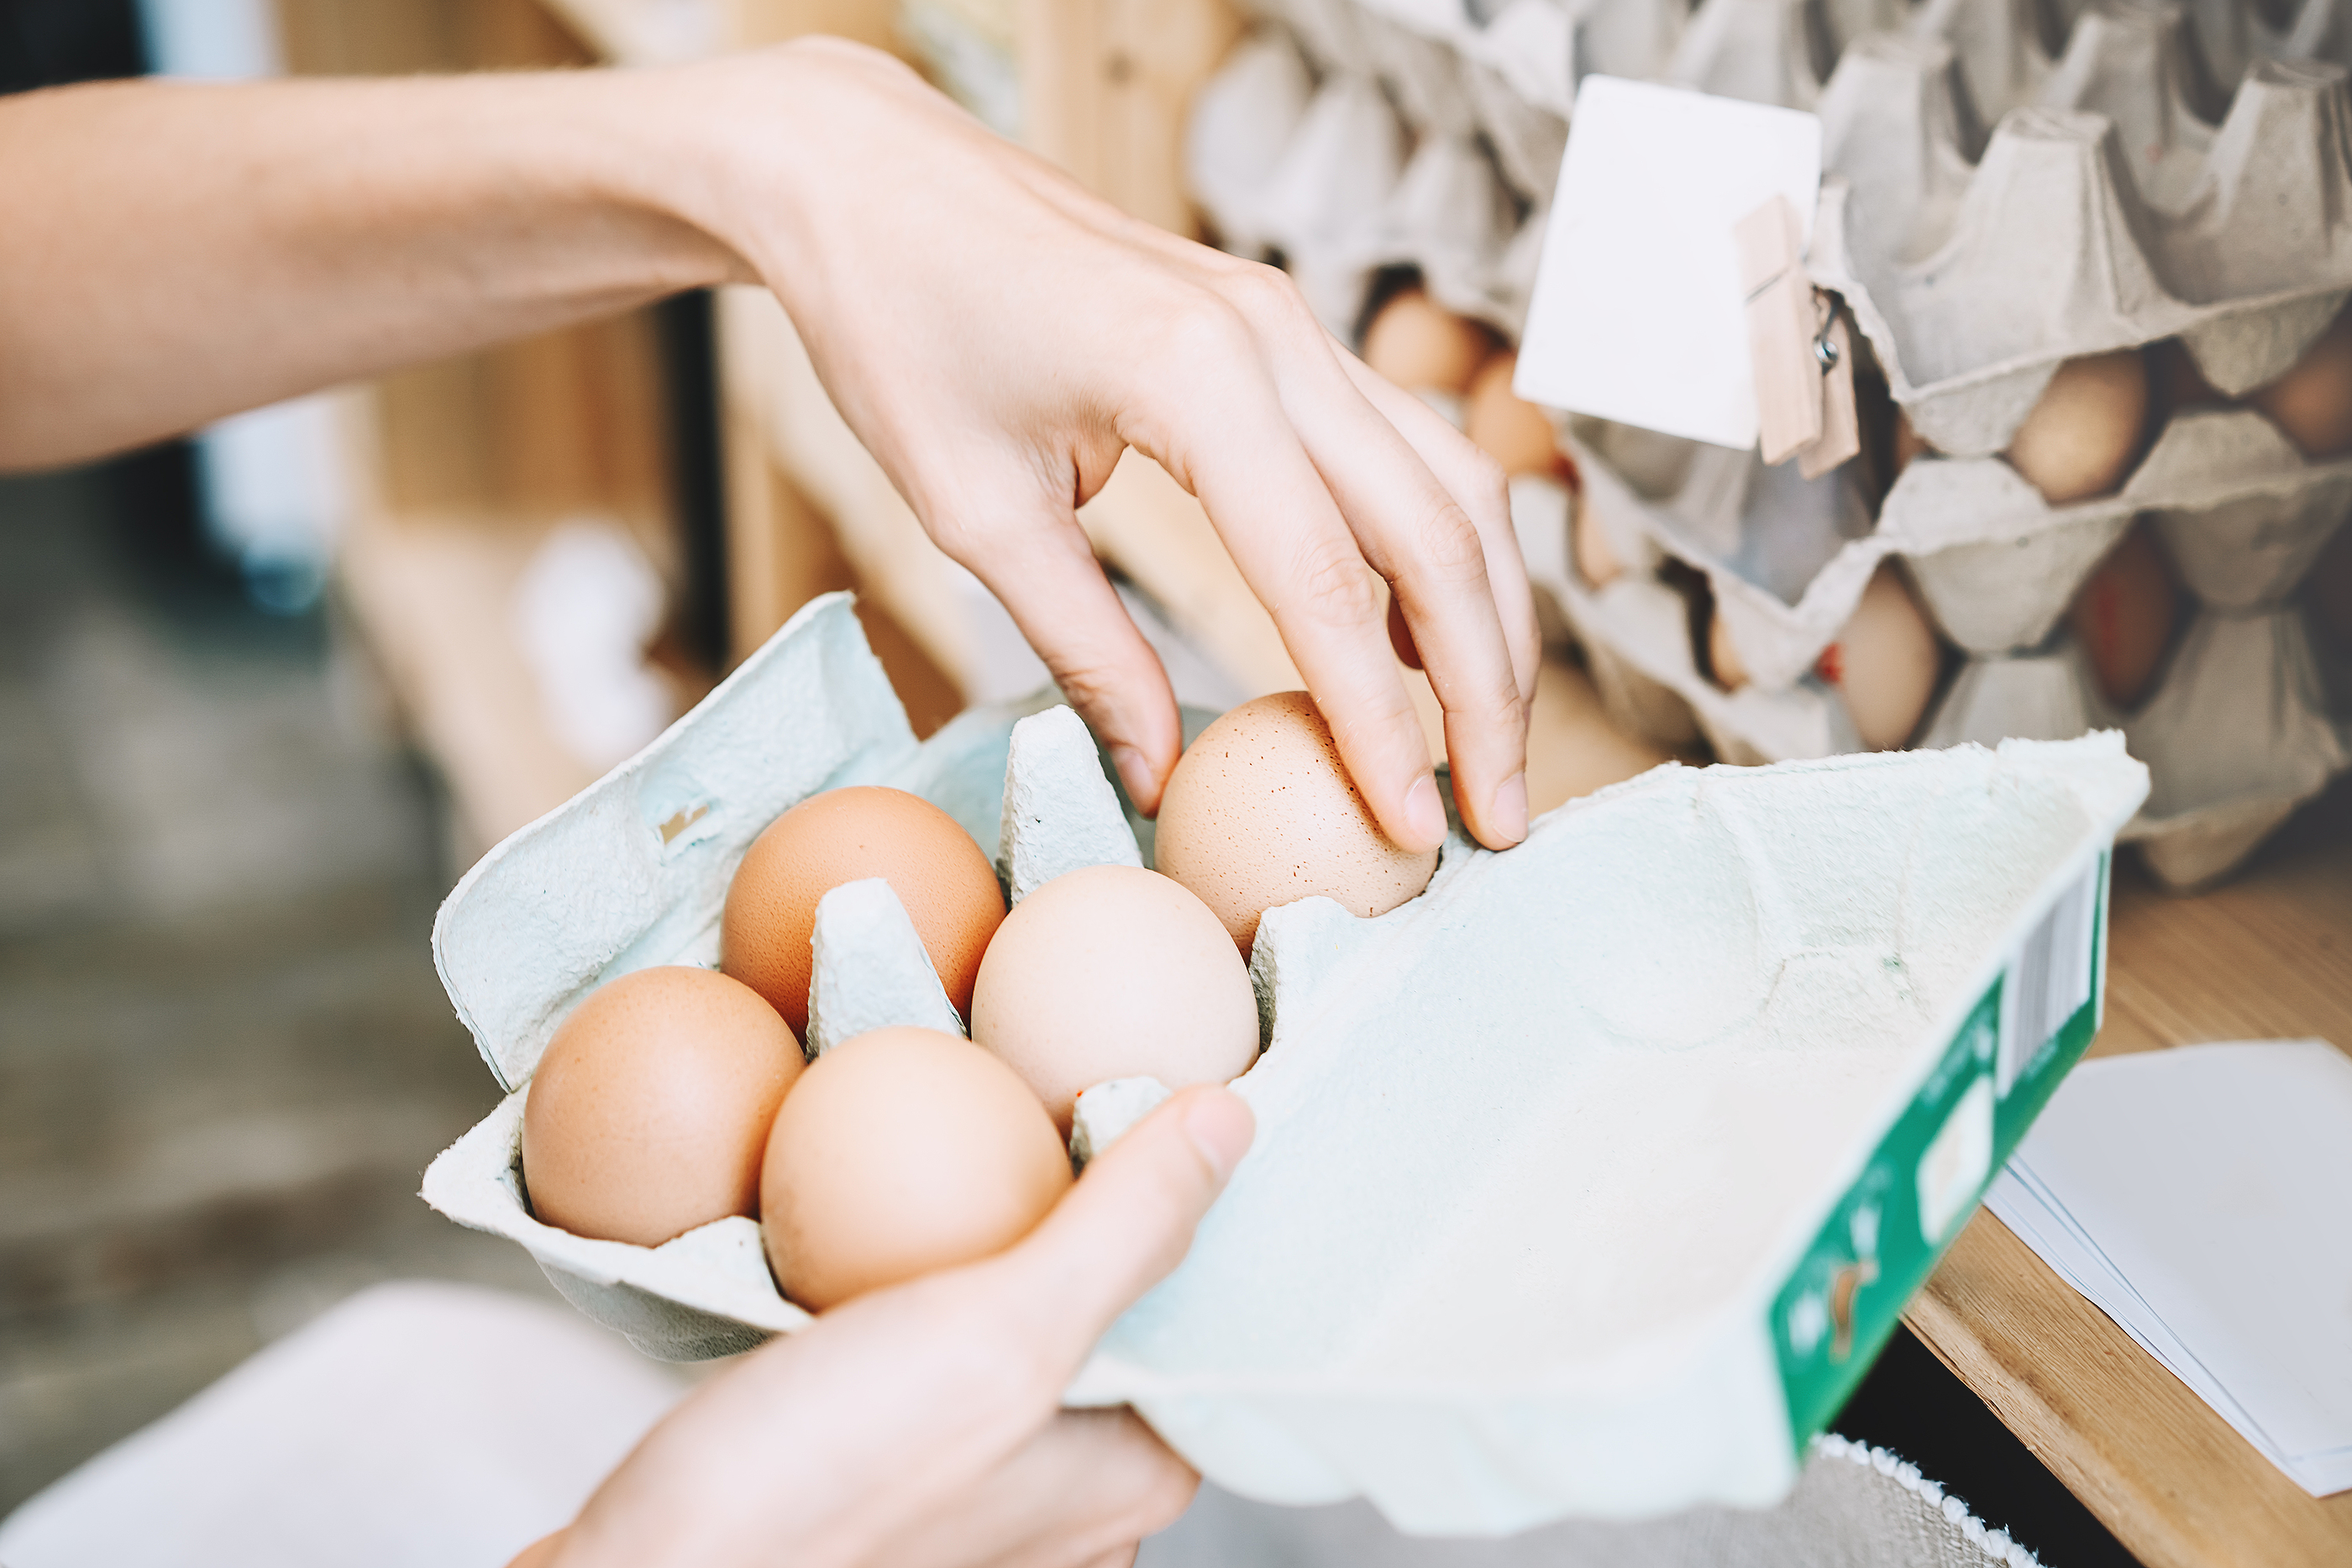 Coraz więcej sieci handlowych rezygnuje ze sprzedaży jaj z chowu klatkowego